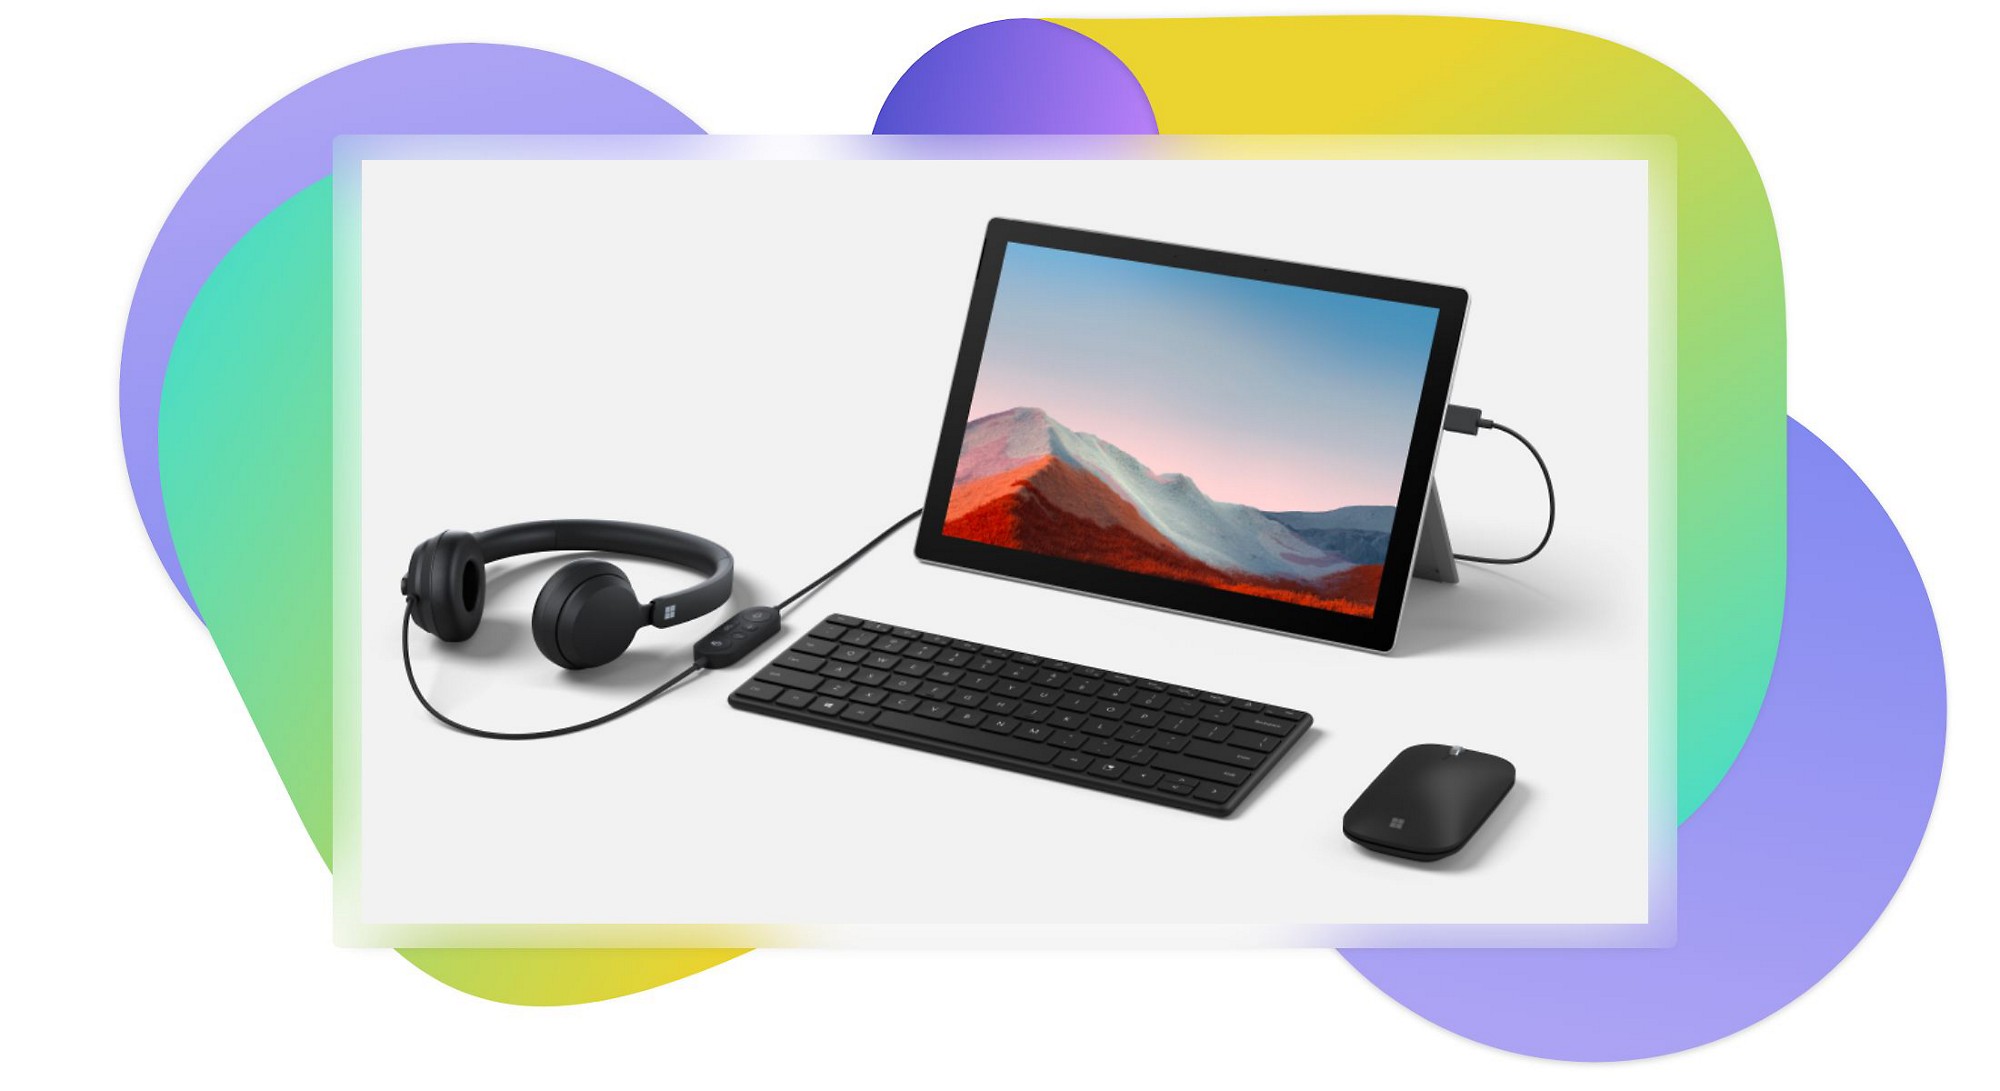 Una tableta apoyada en un soporte, un teclado Bluetooth, unos audífonos enchufados en la tableta y un mouse Bluetooth.